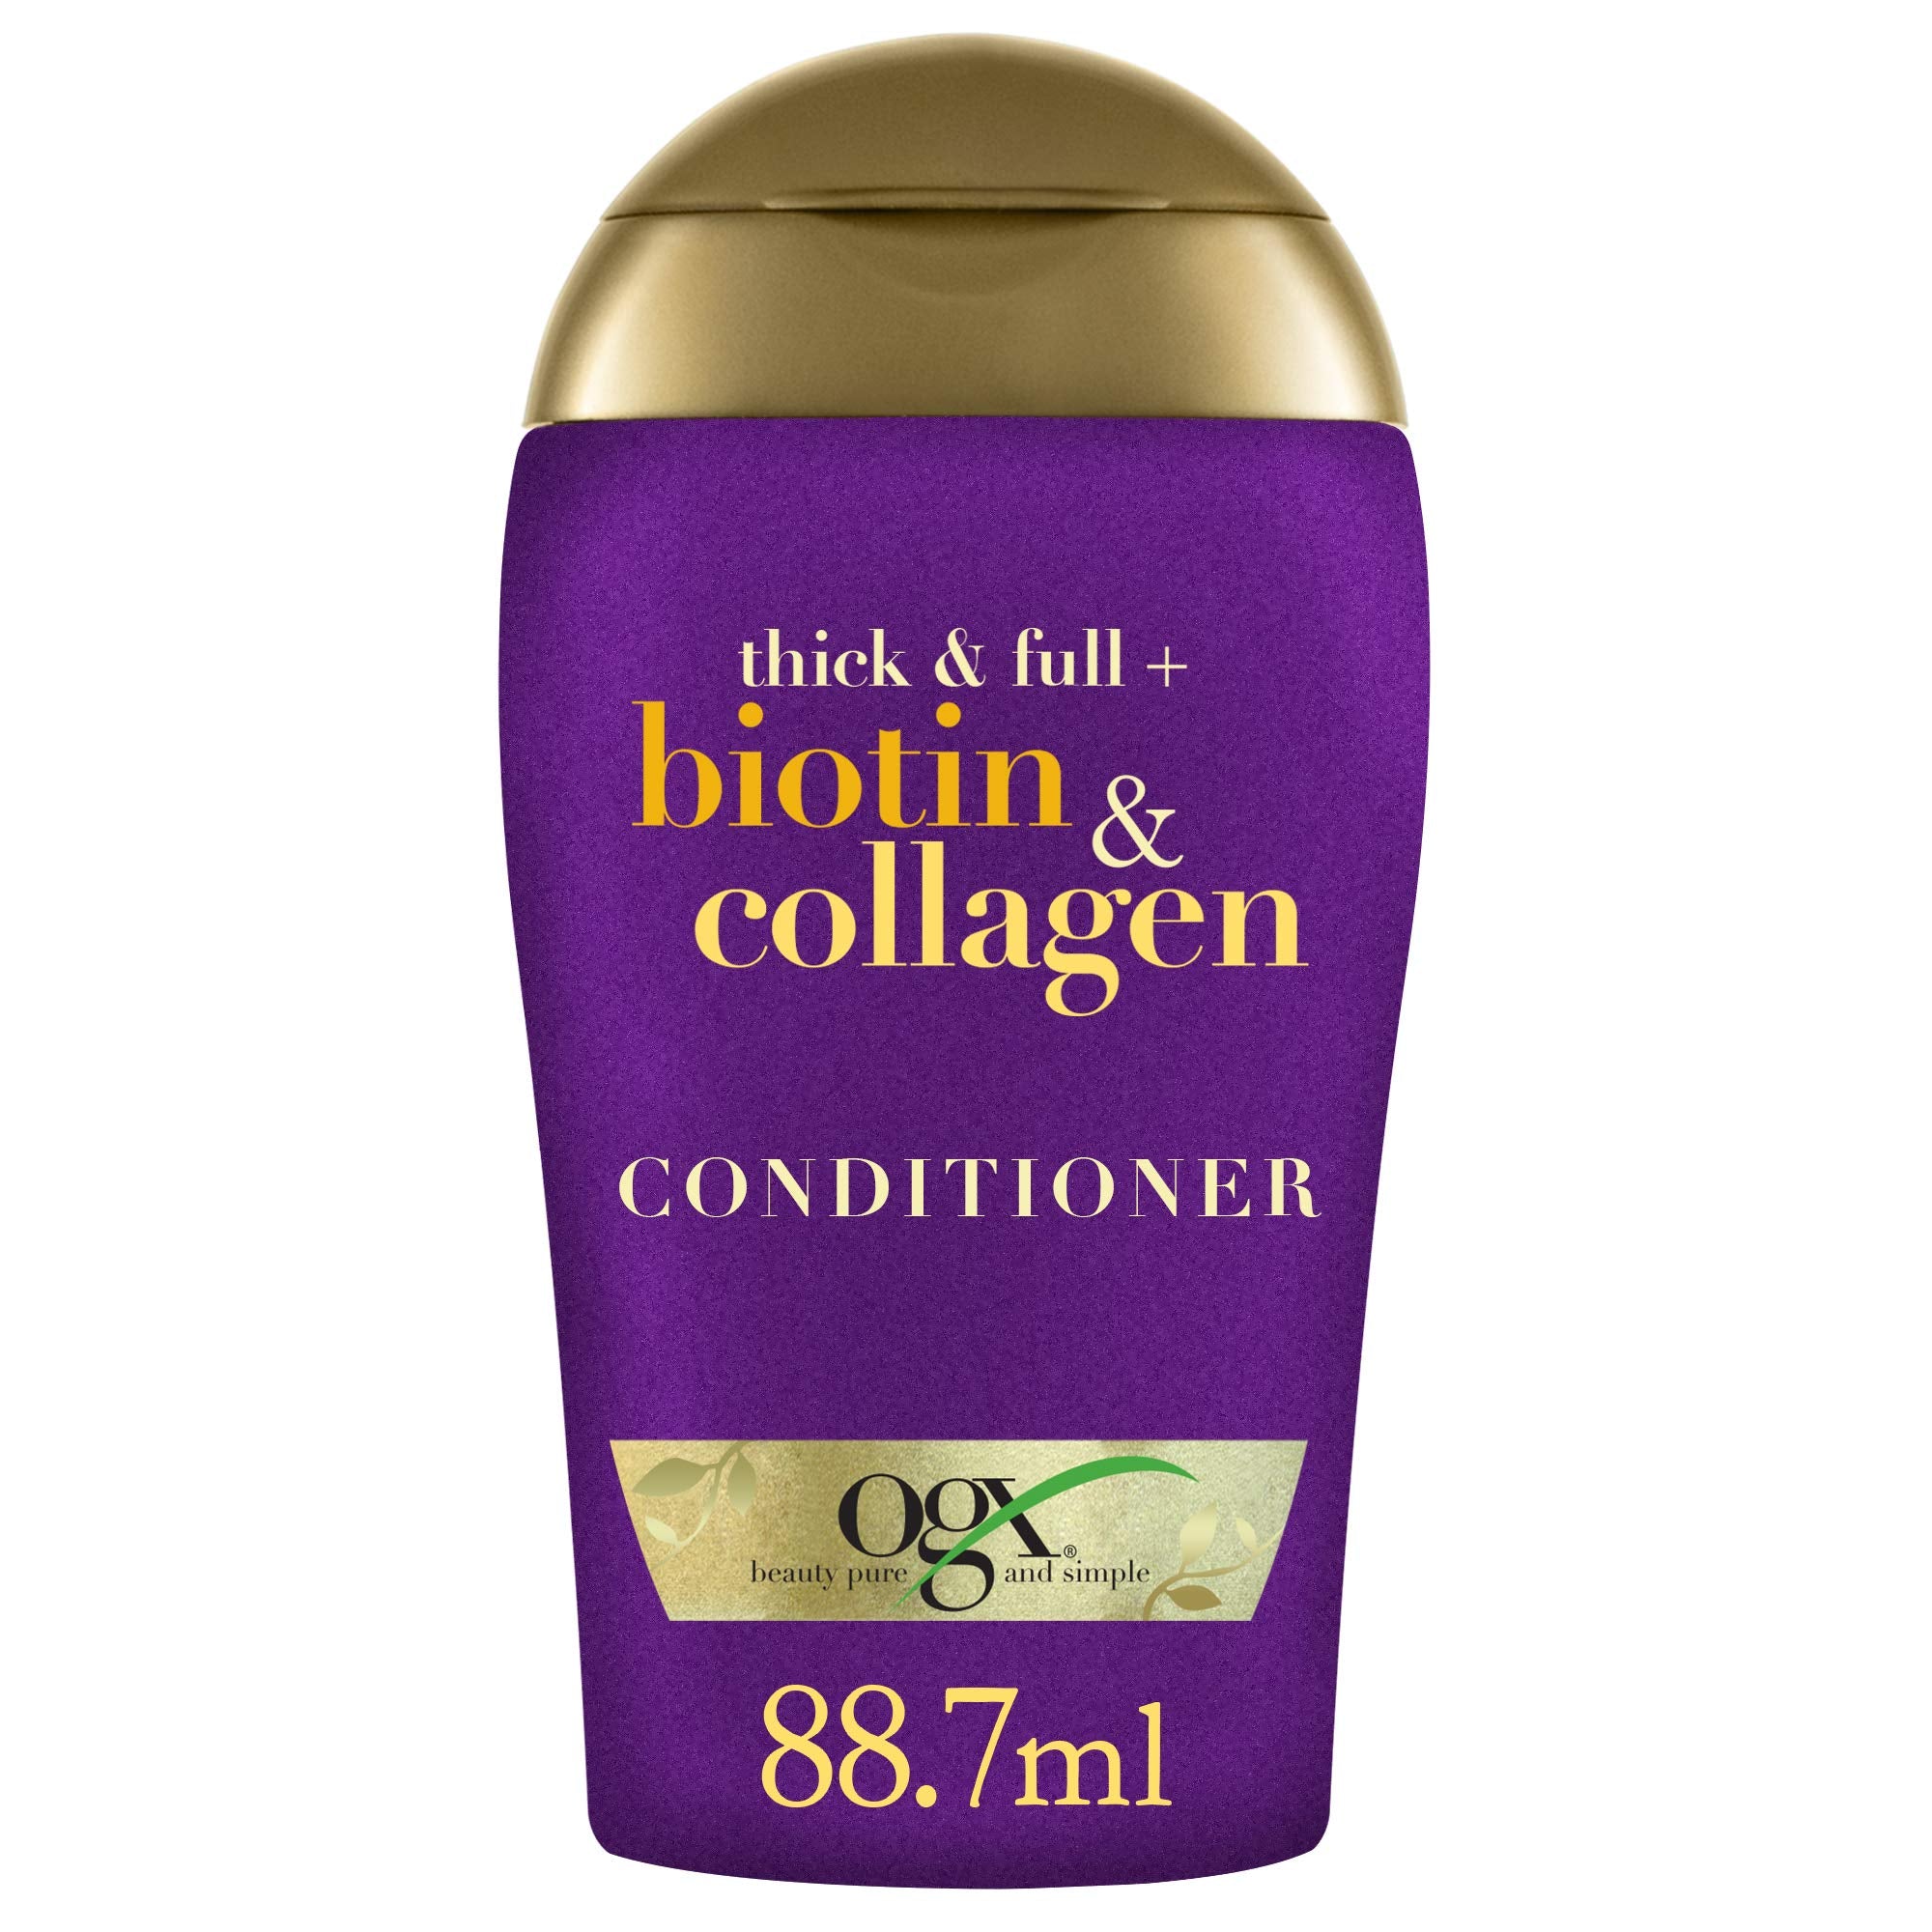 OGX Thick & Full + Biotin & Collagen Conditioner 88.7 ml